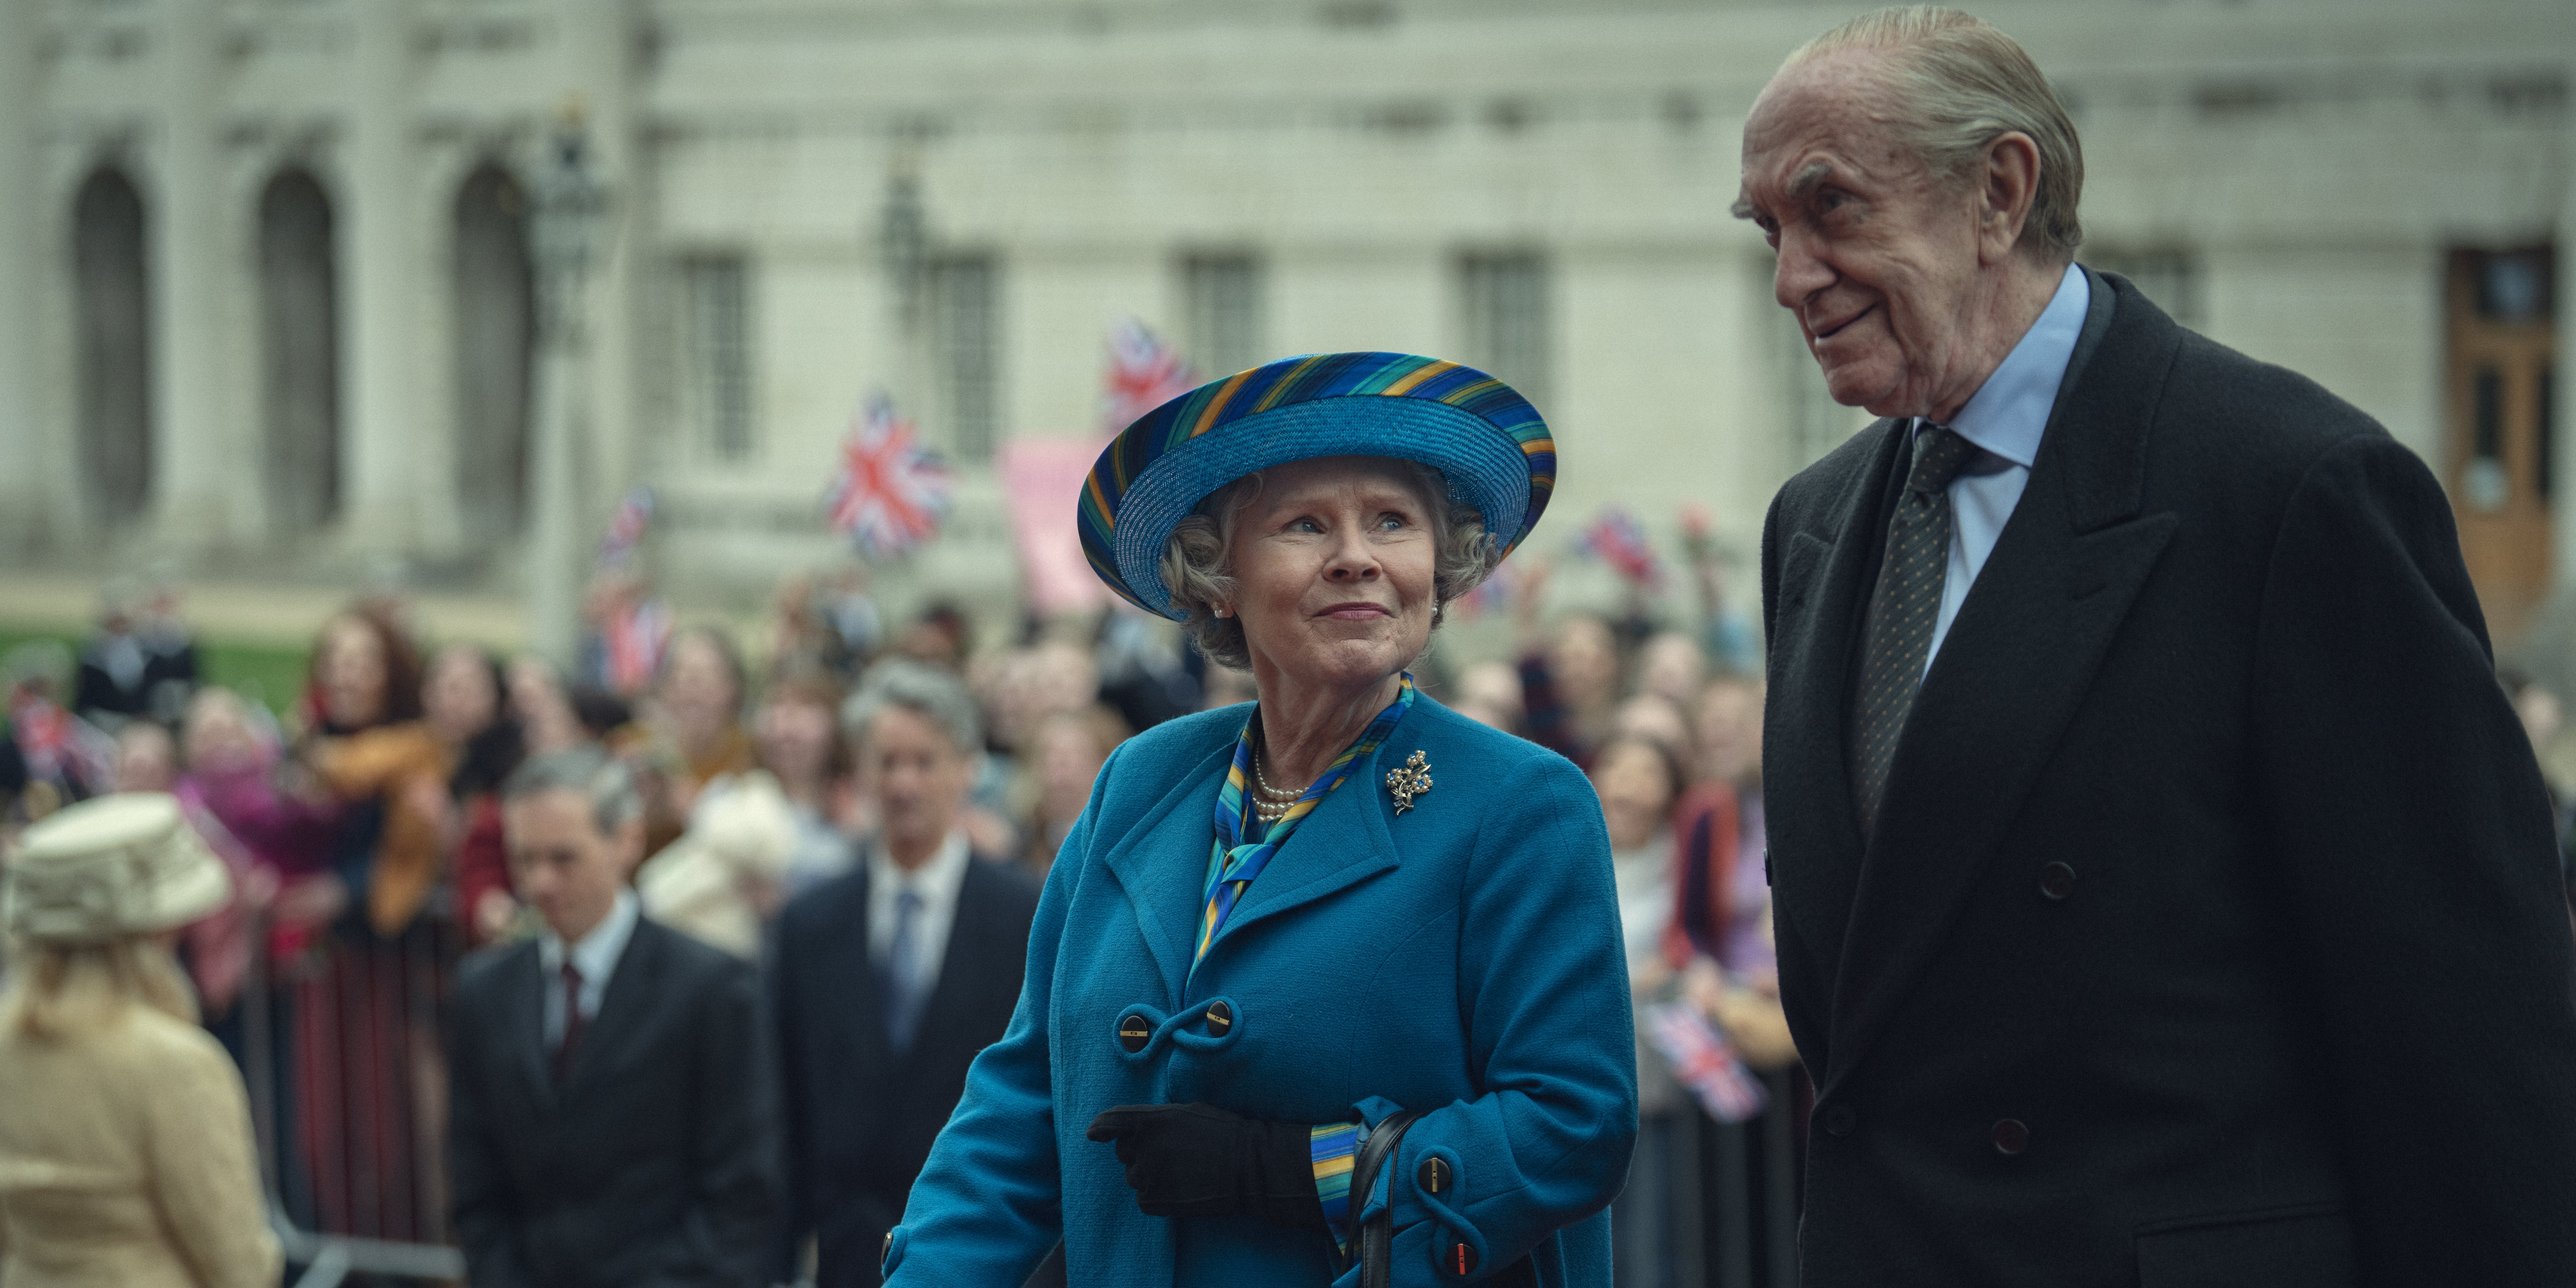 The Queen celebrates her Golden Jubilee